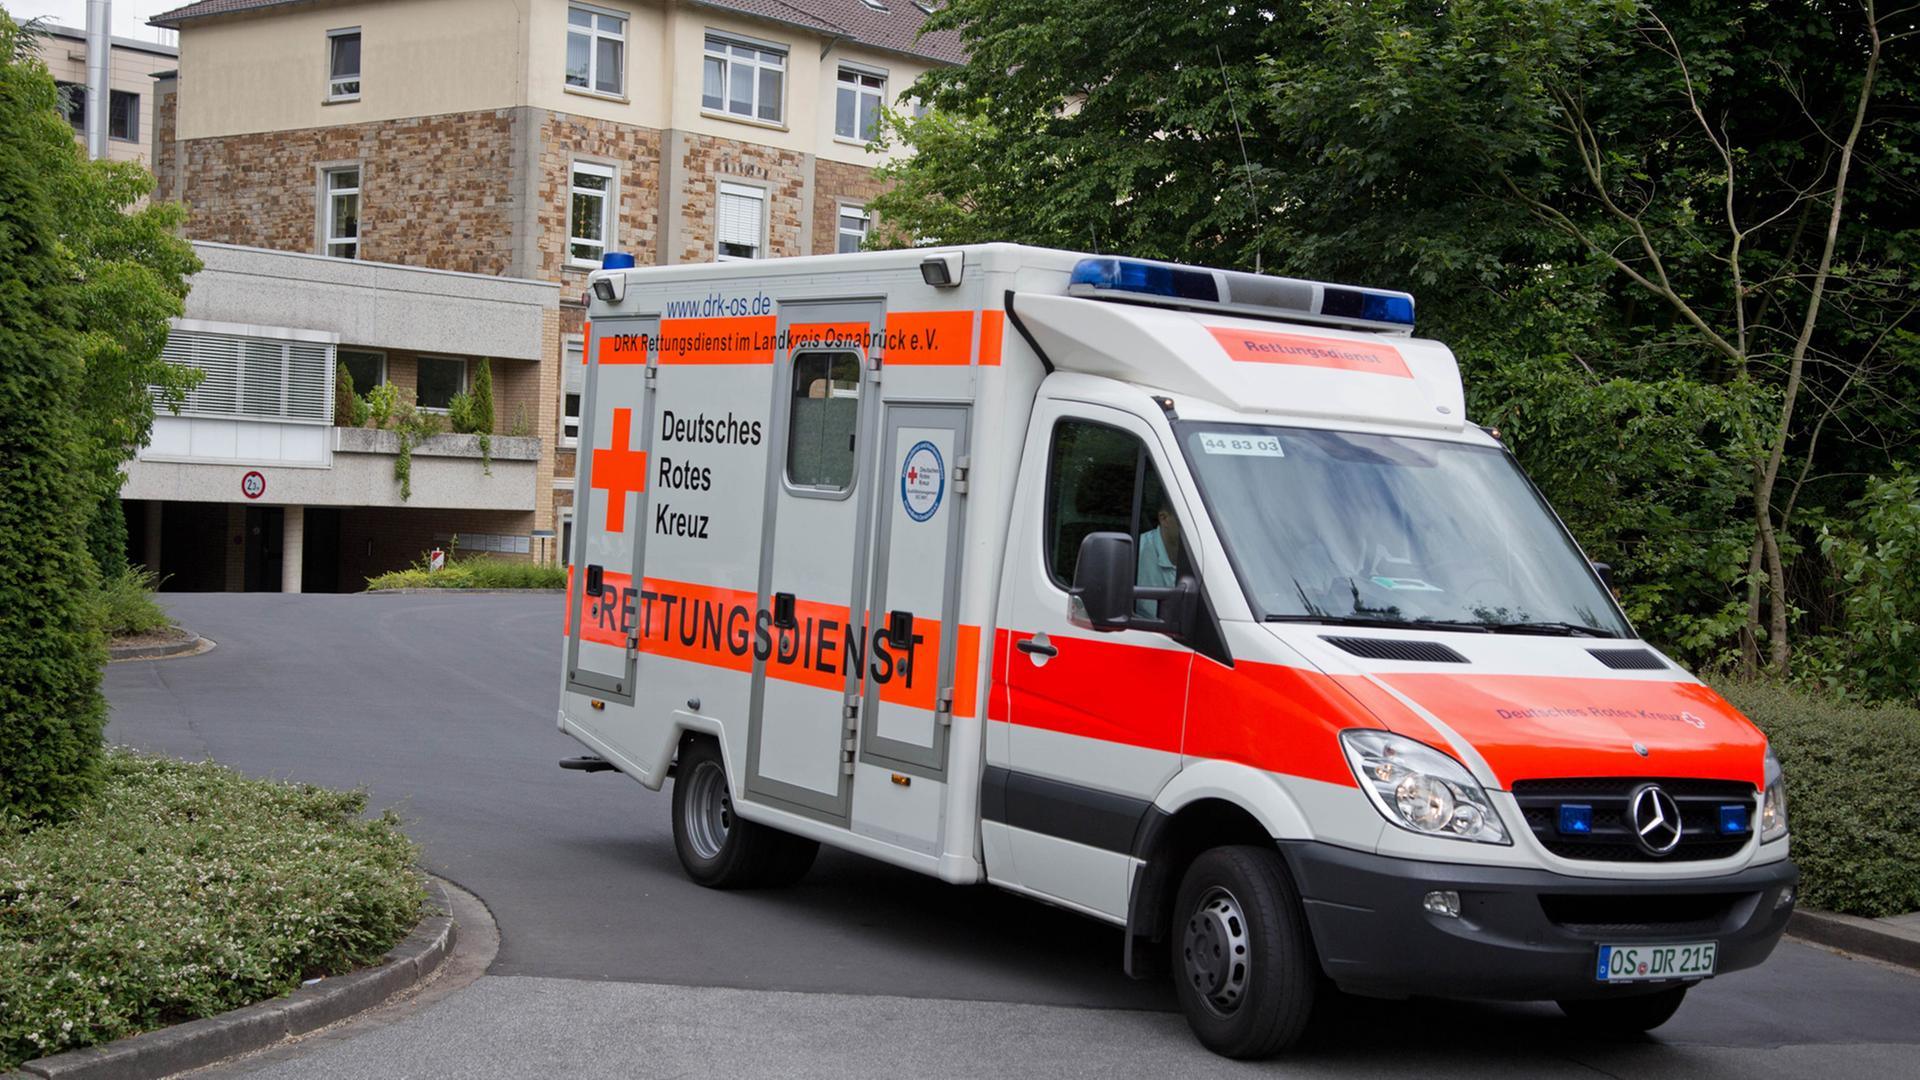 Mers-Patient im Krankenhaus St. Raphael der Niels-Stensen-Kliniken in Ostercappeln / Niedersachsen gestorben.